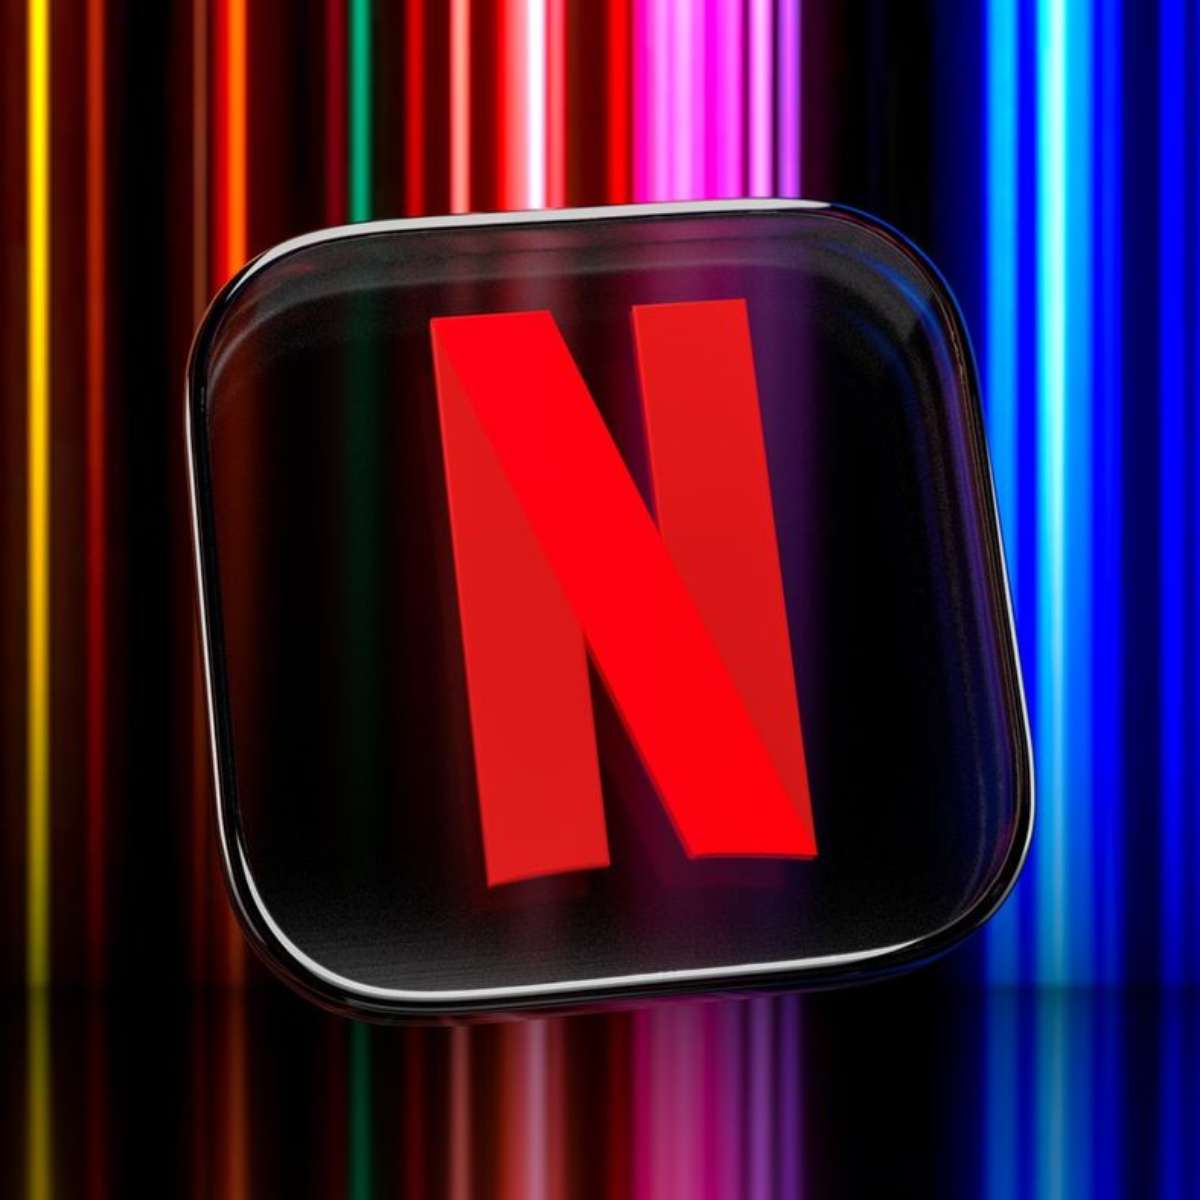 Netflix: regra contra compartilhamento de contas chega em 4 países